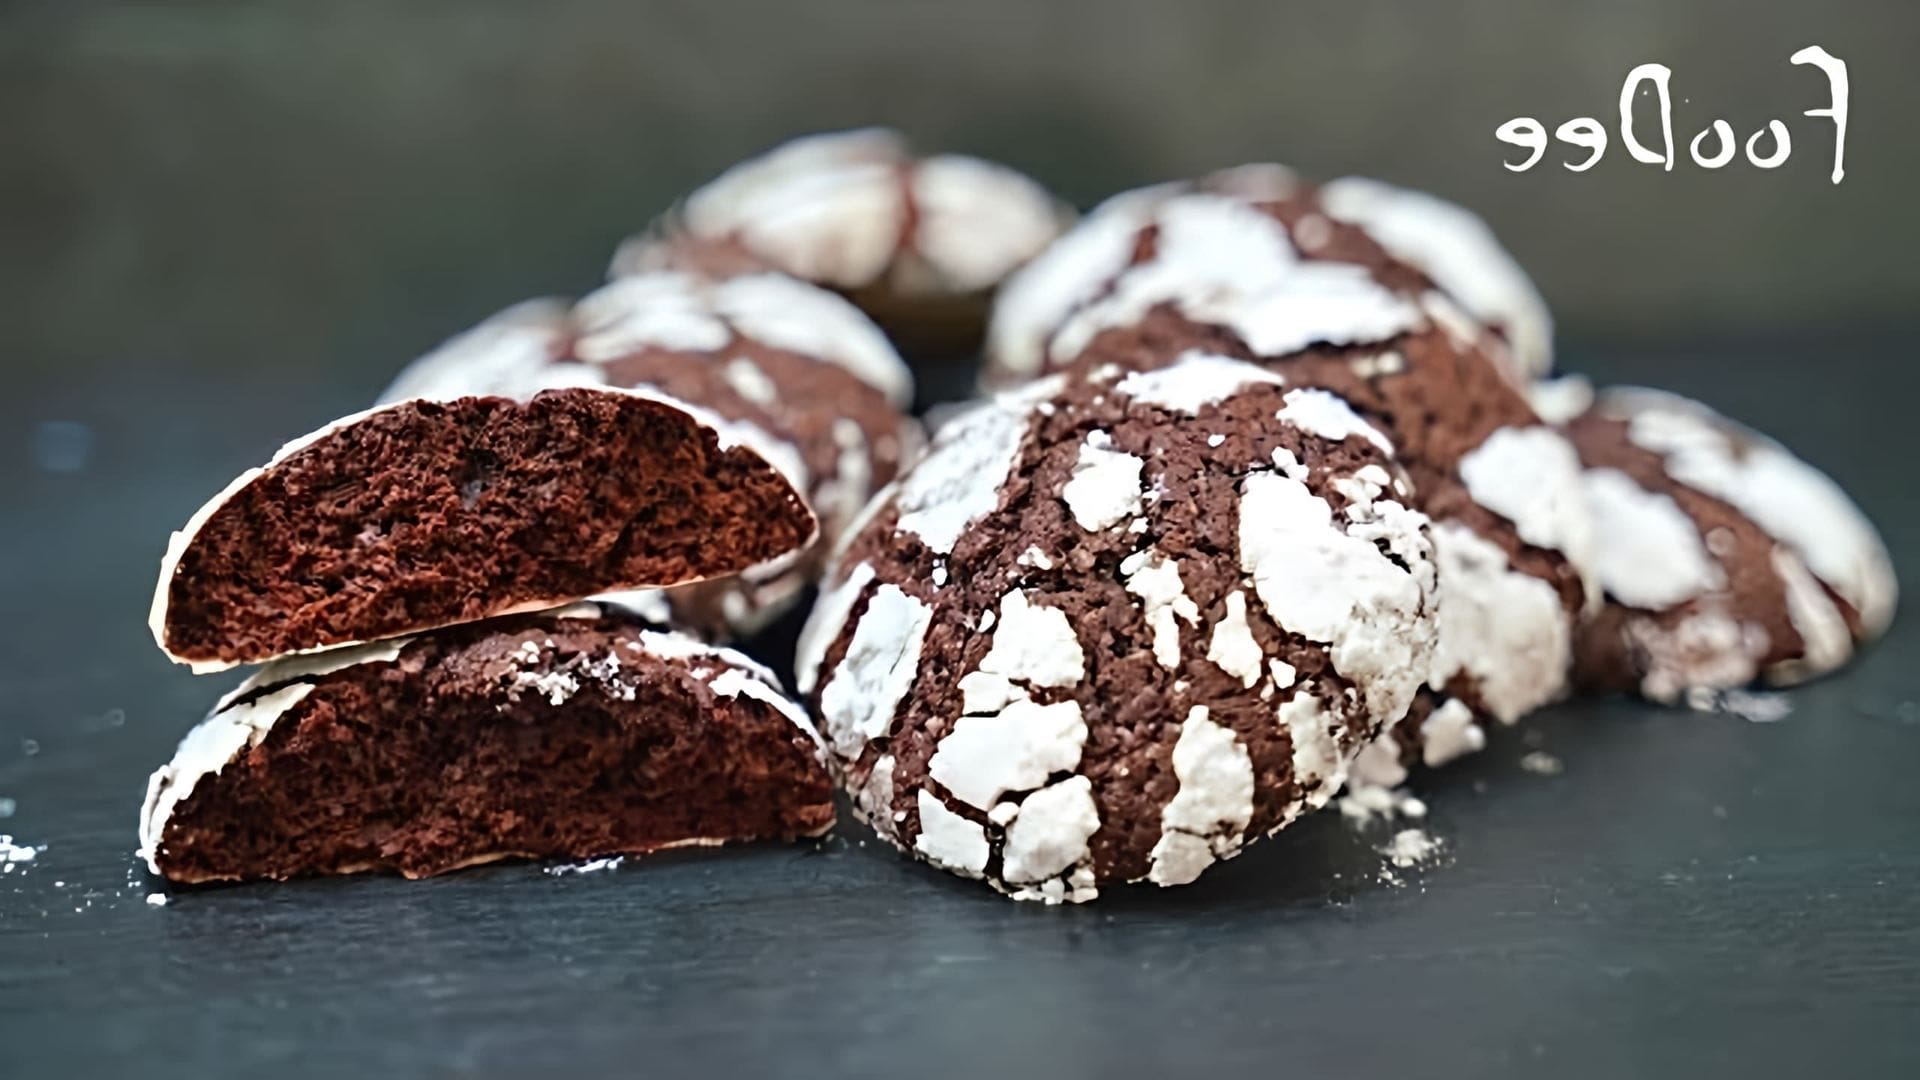 В этом видео демонстрируется рецепт приготовления мраморного шоколадного печенья с трещинками